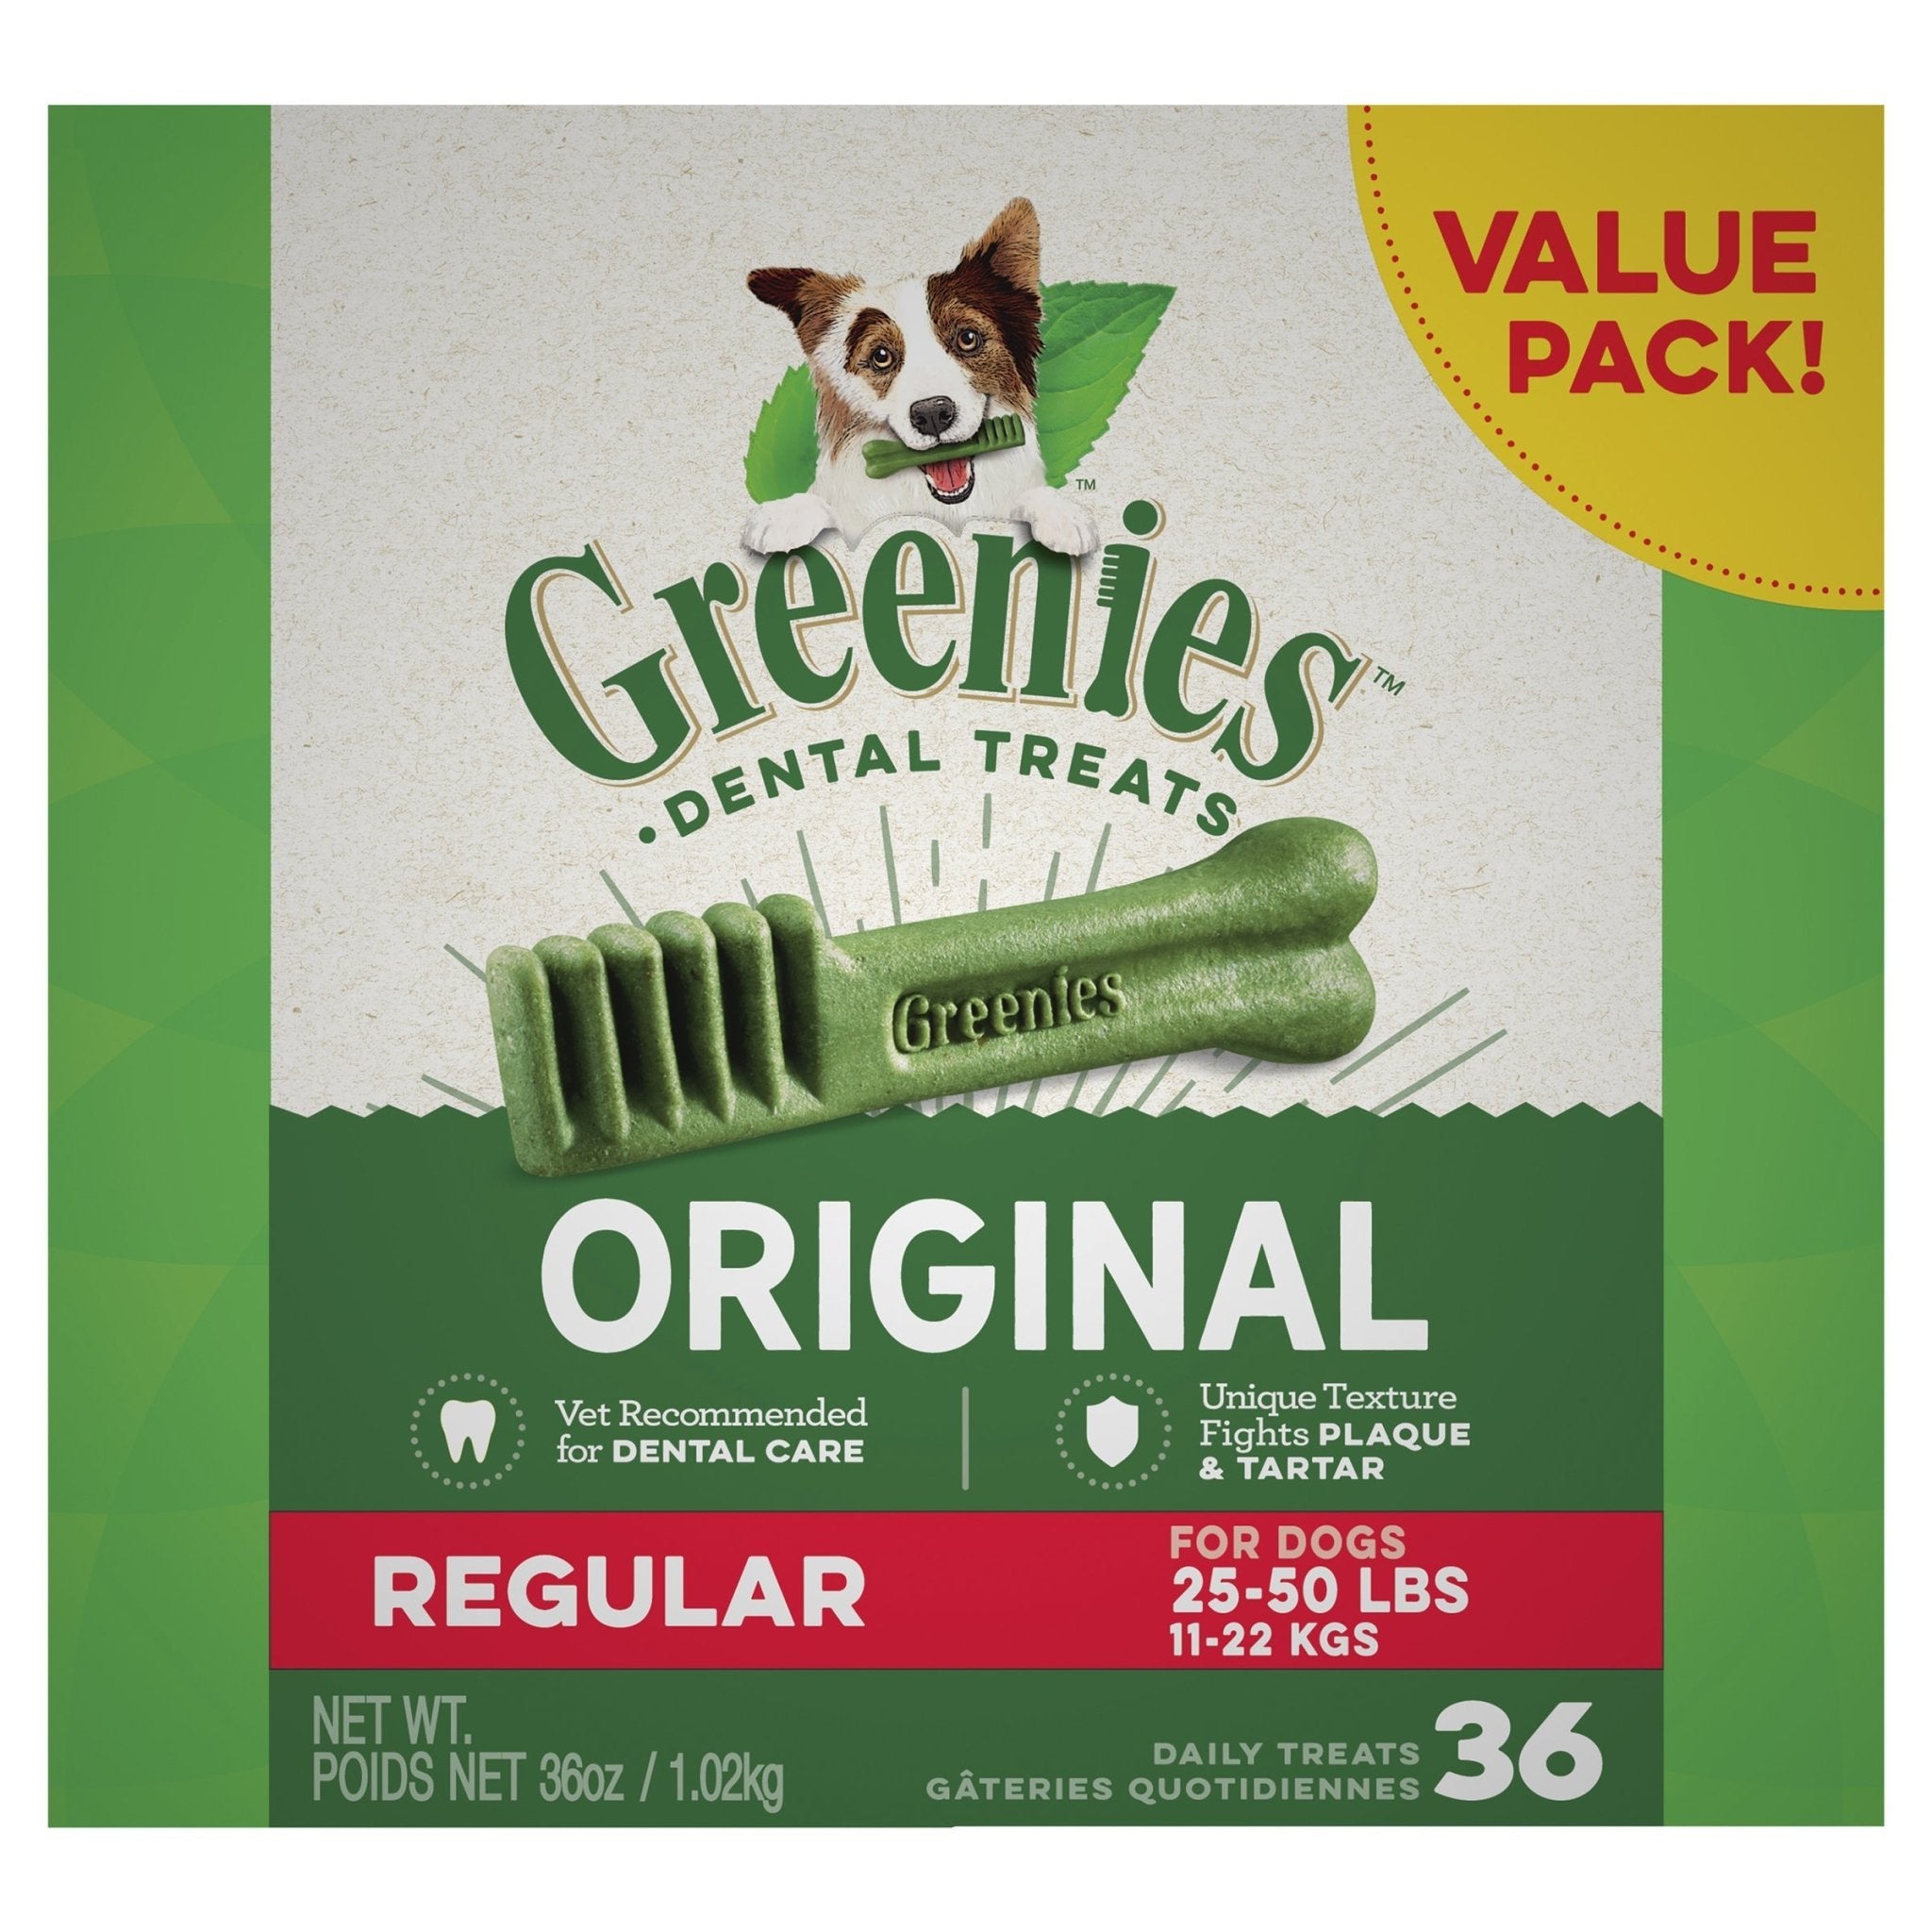 GREENIES™ Original Regular Dental Dog Treat 36 Value Pack 1.02kg